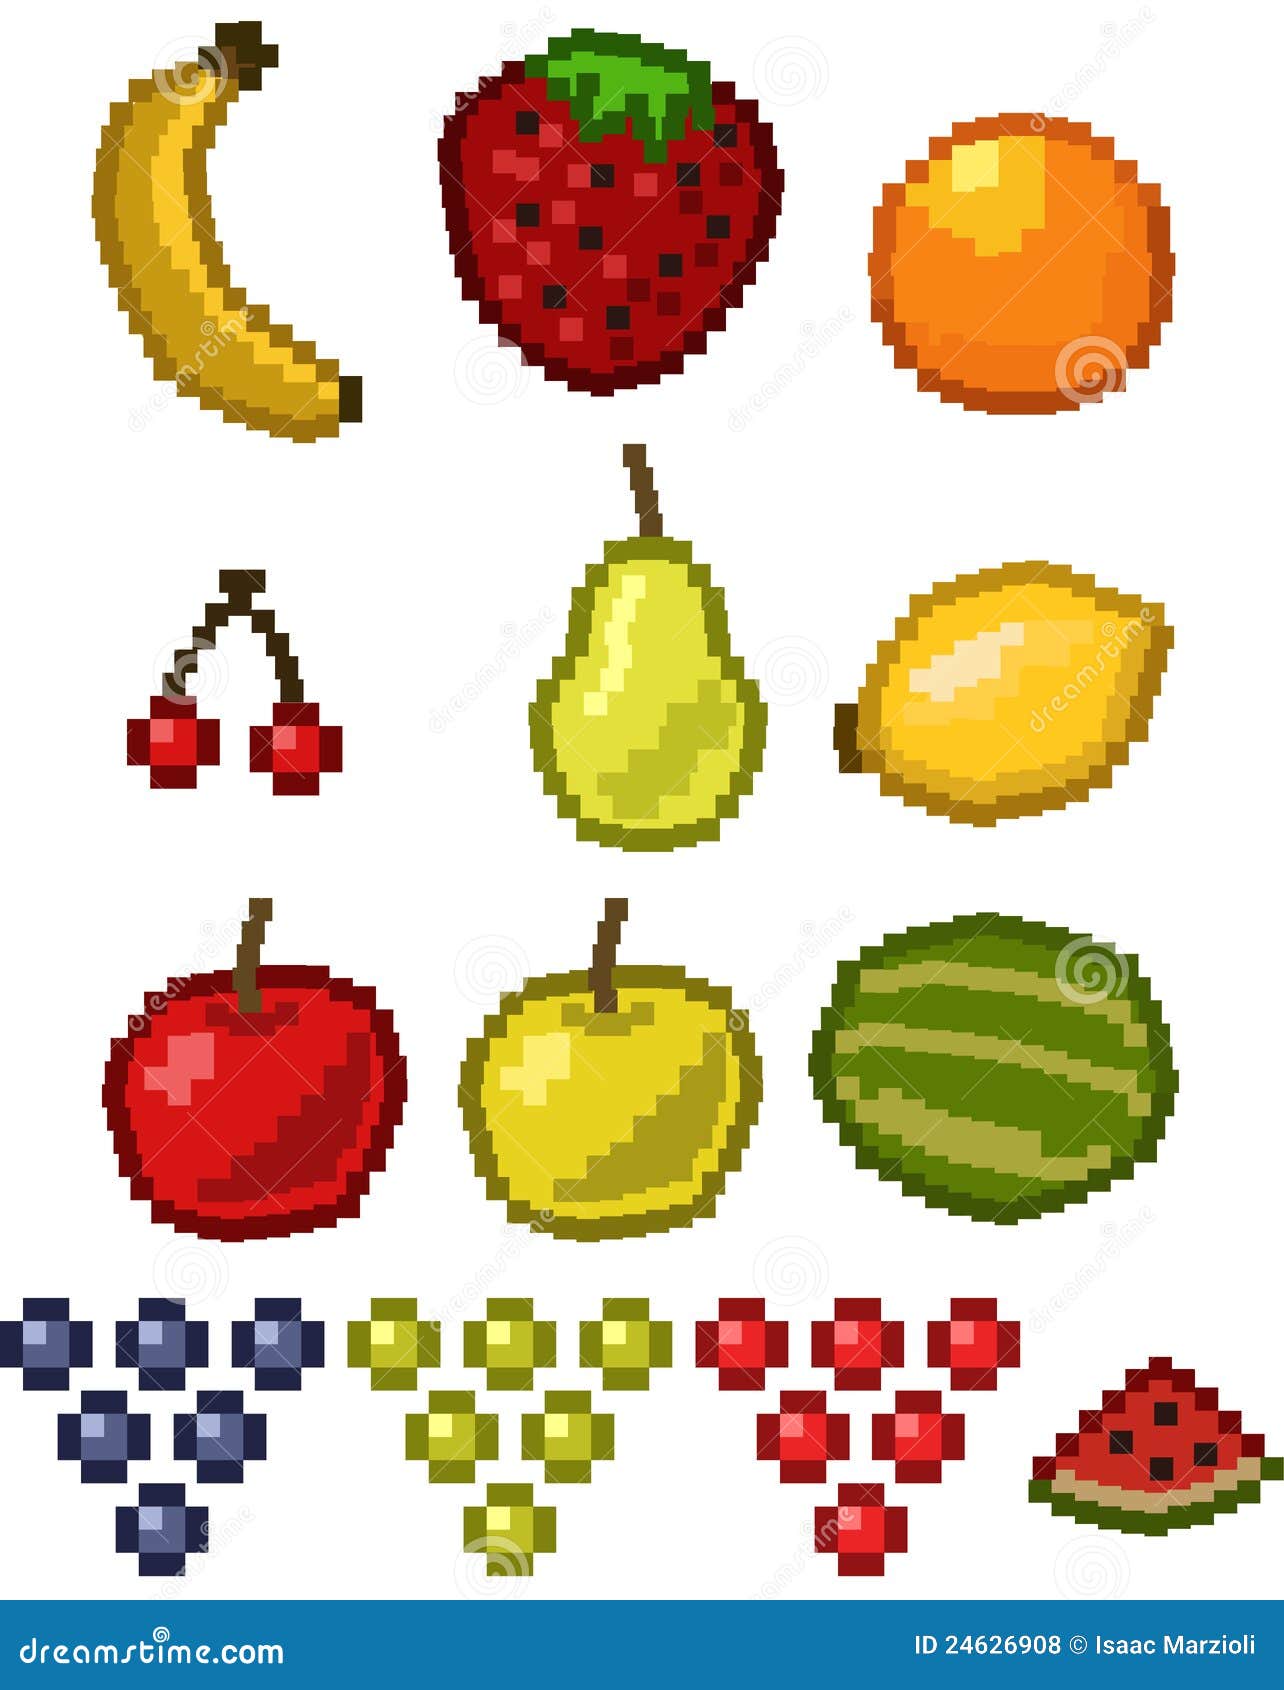 Fruit Pixel Art Images - Free Download on Freepik